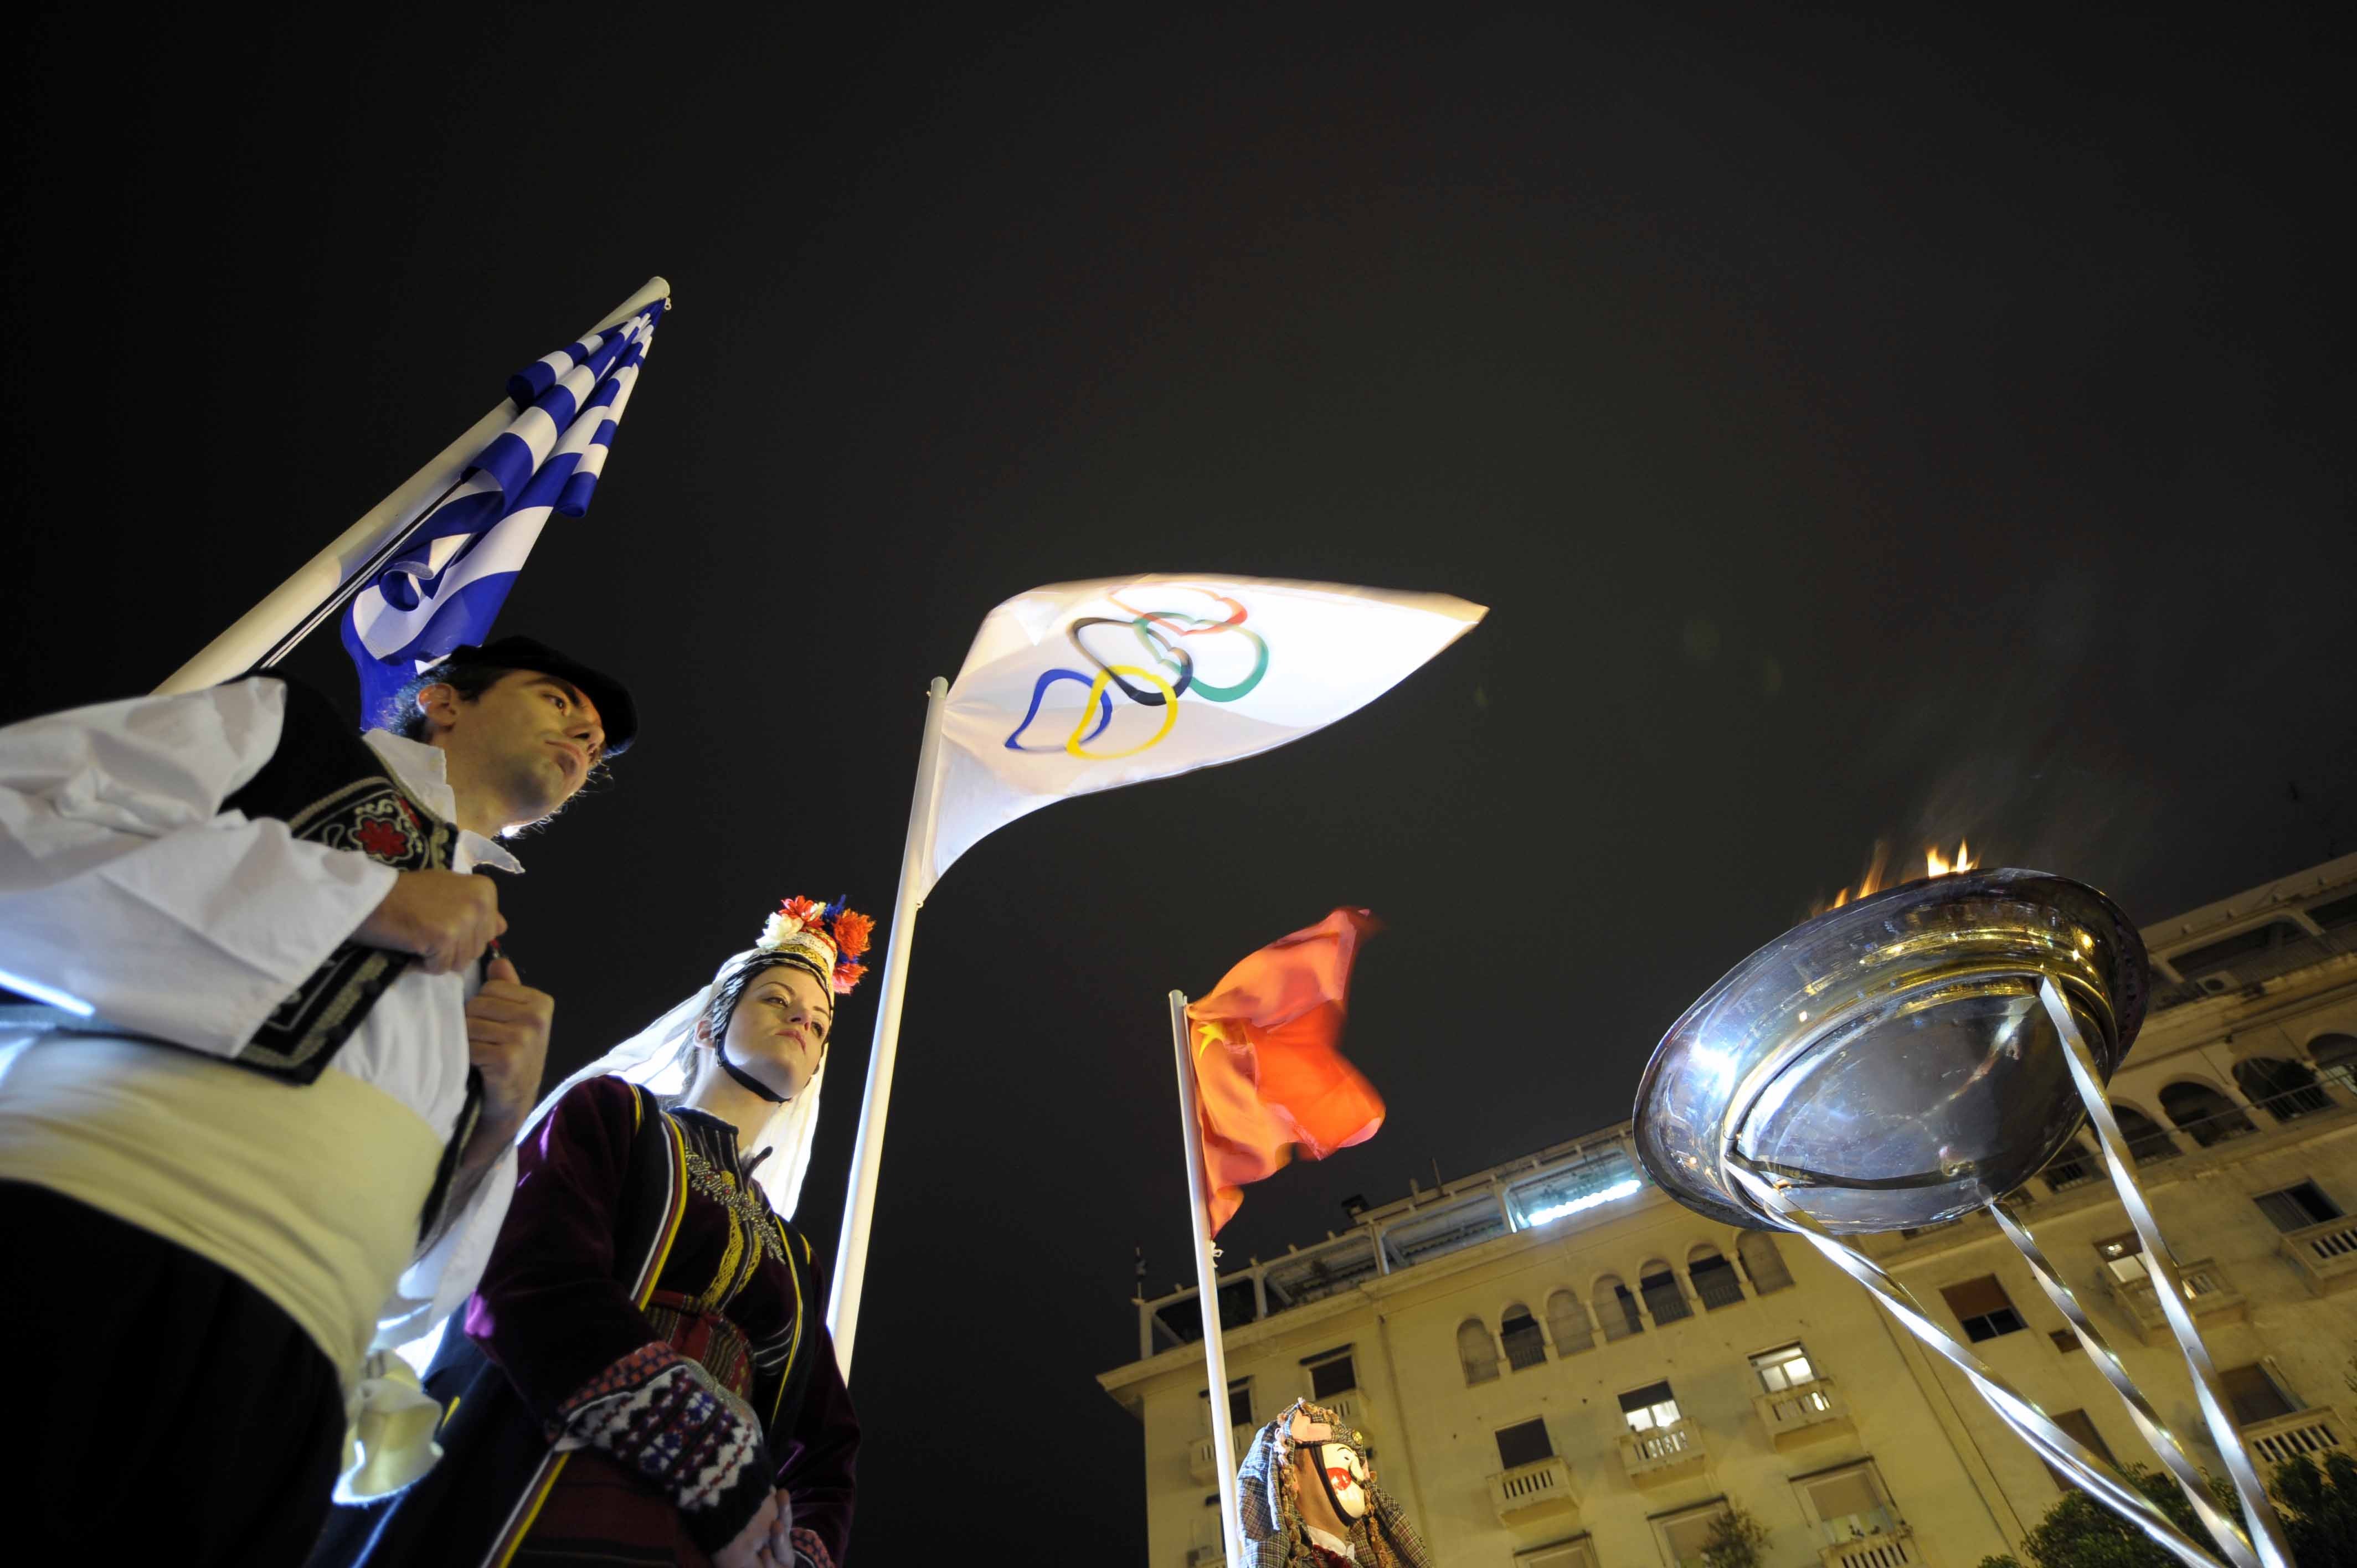 资讯 影像 圣火 从雅典到北京   奥运圣火一路点燃奥运激情,一路播洒